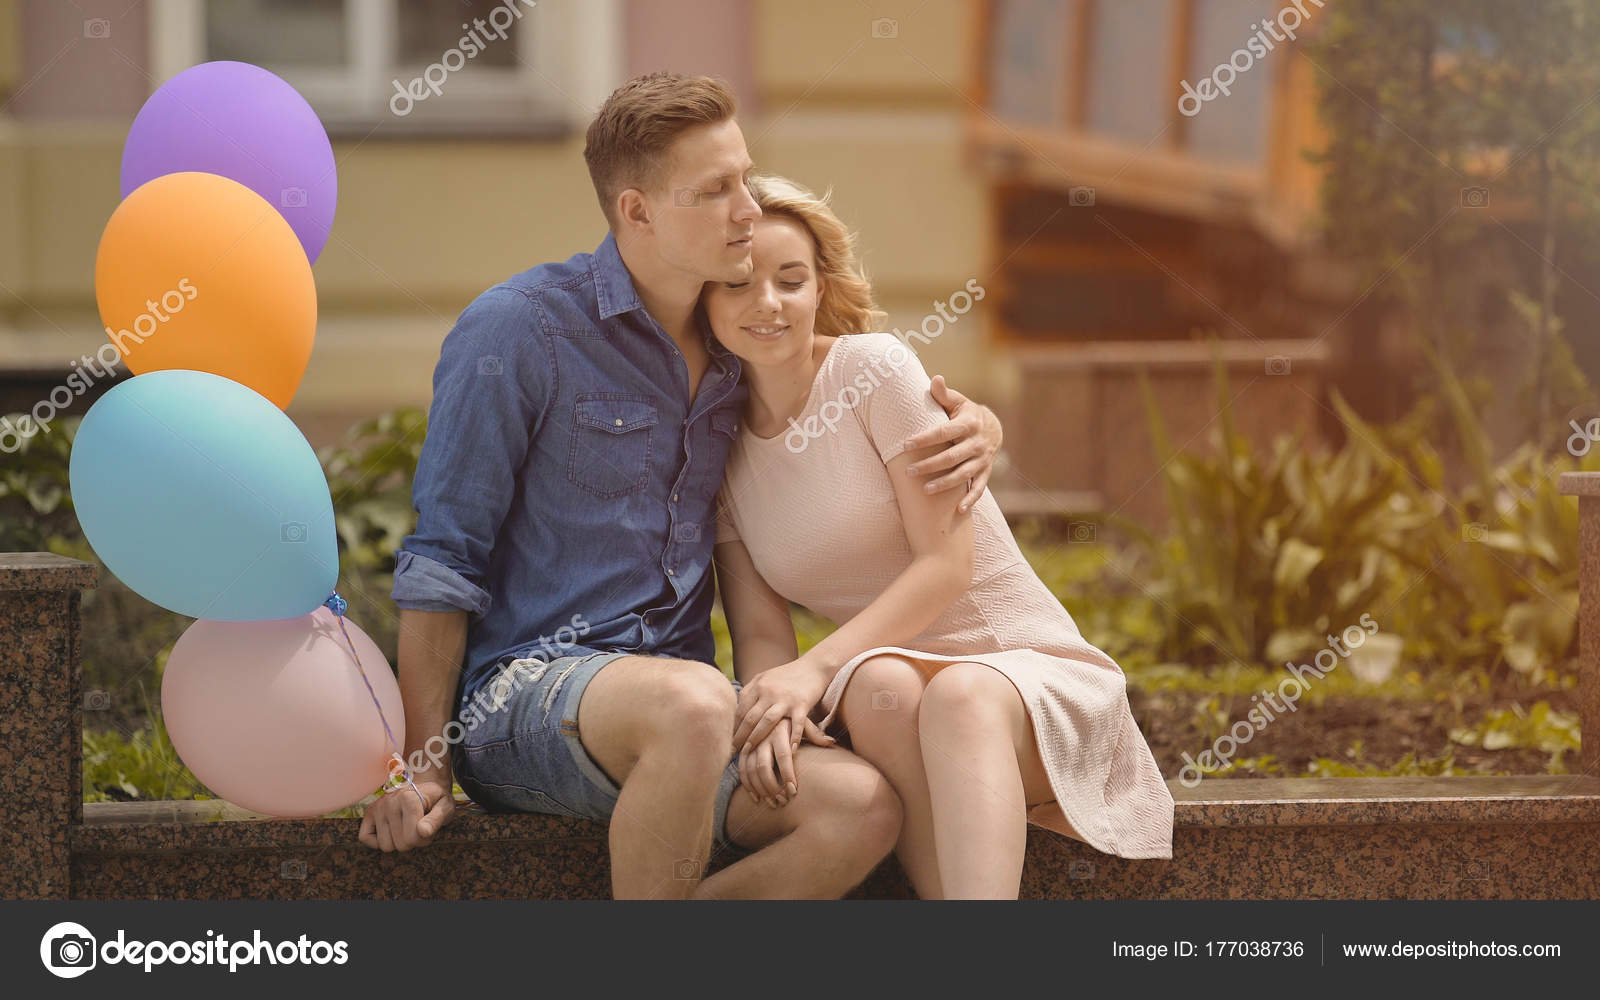 schade Extreem Nationaal volkslied Man met lucht ballonnen knuffelen zijn vriendin, paar op romantische datum  knuffelen ⬇ Stockfoto, rechtenvrije foto door © motortion #177038736